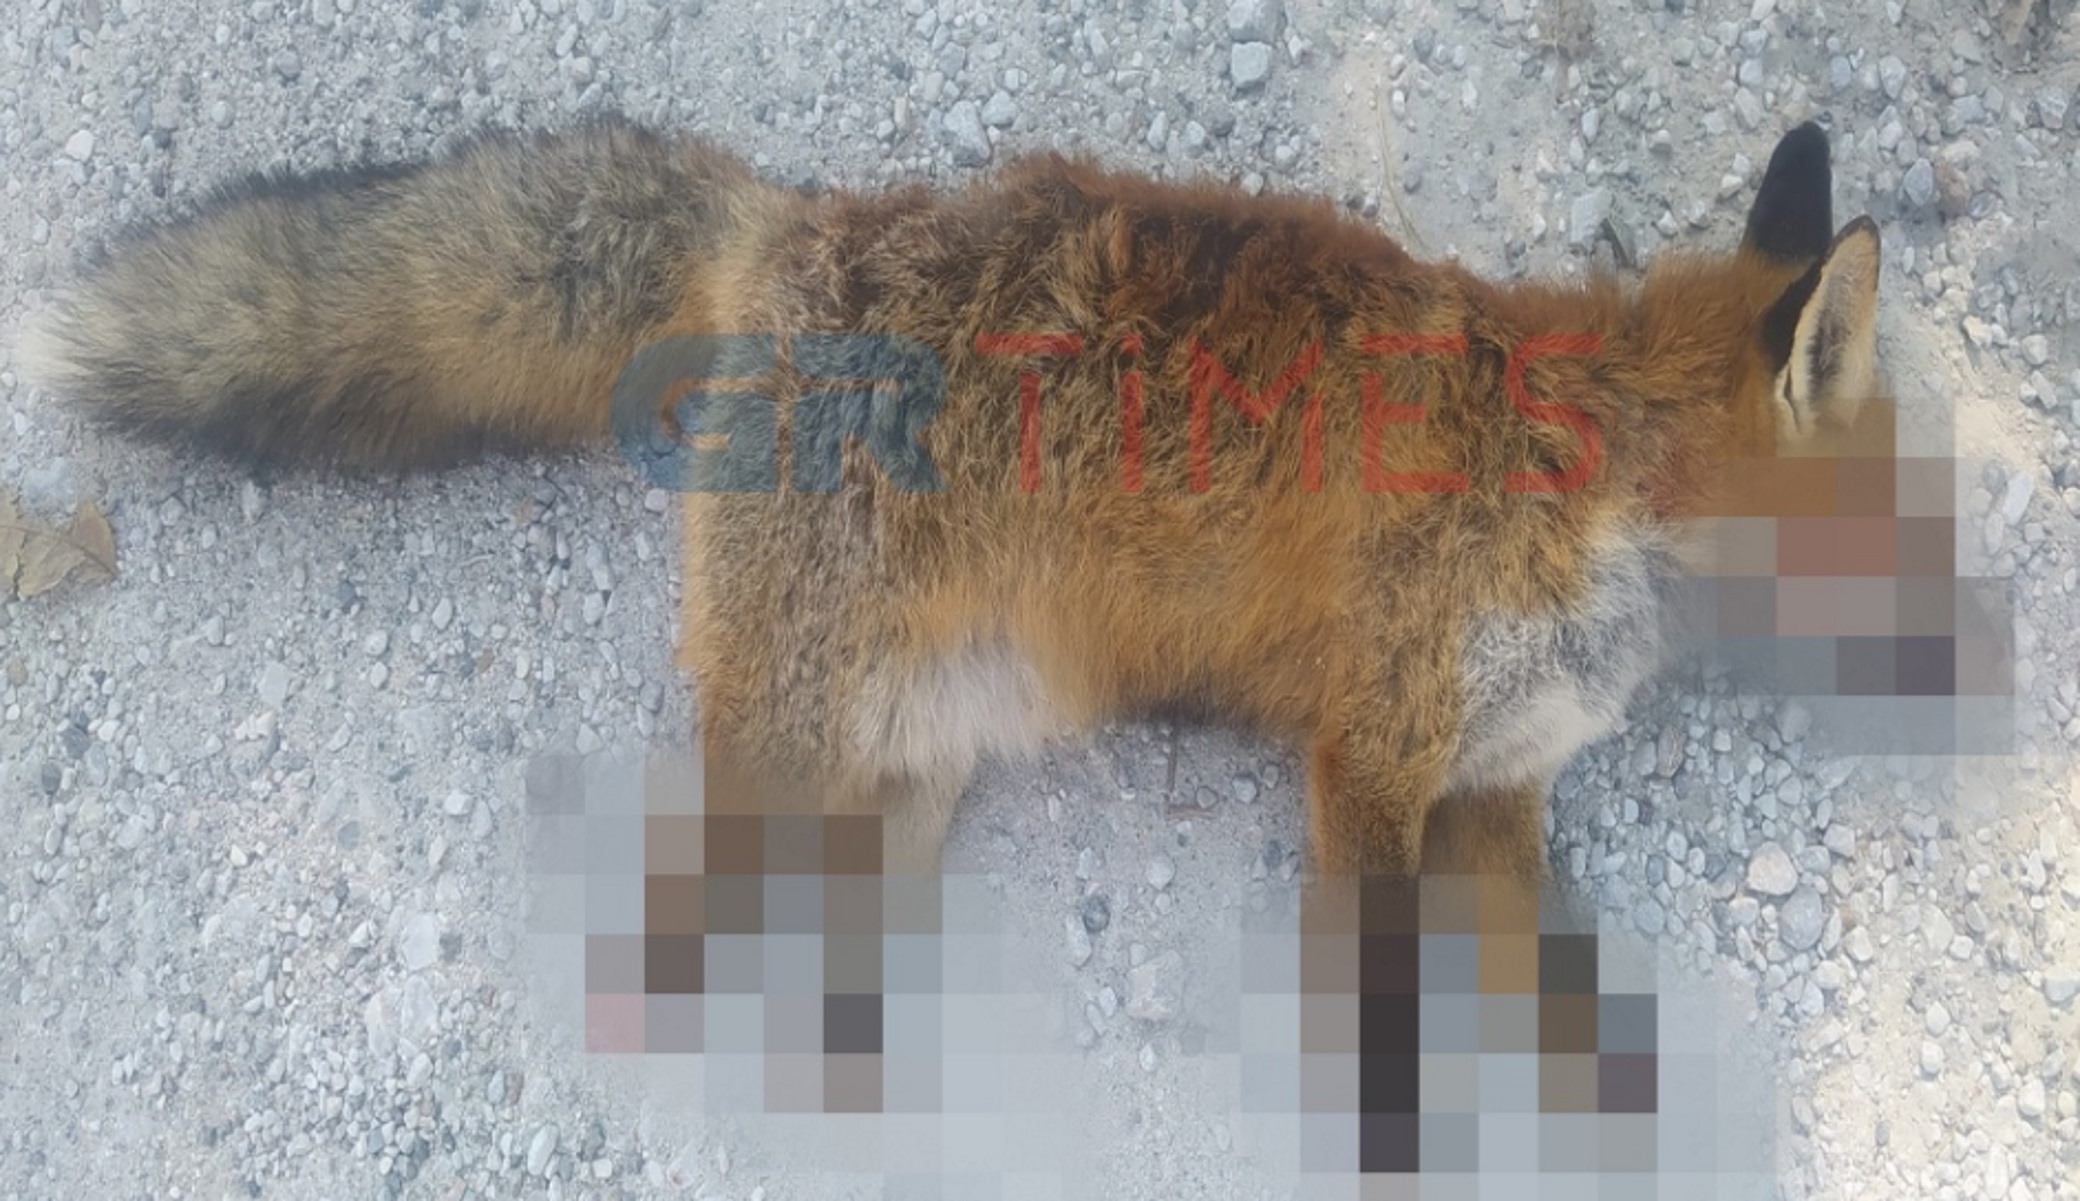 Φρίκη στην Καστοριά: Βασάνισαν και ακρωτηρίασαν αλεπού – To ζώο πέθανε από αιμορραγία